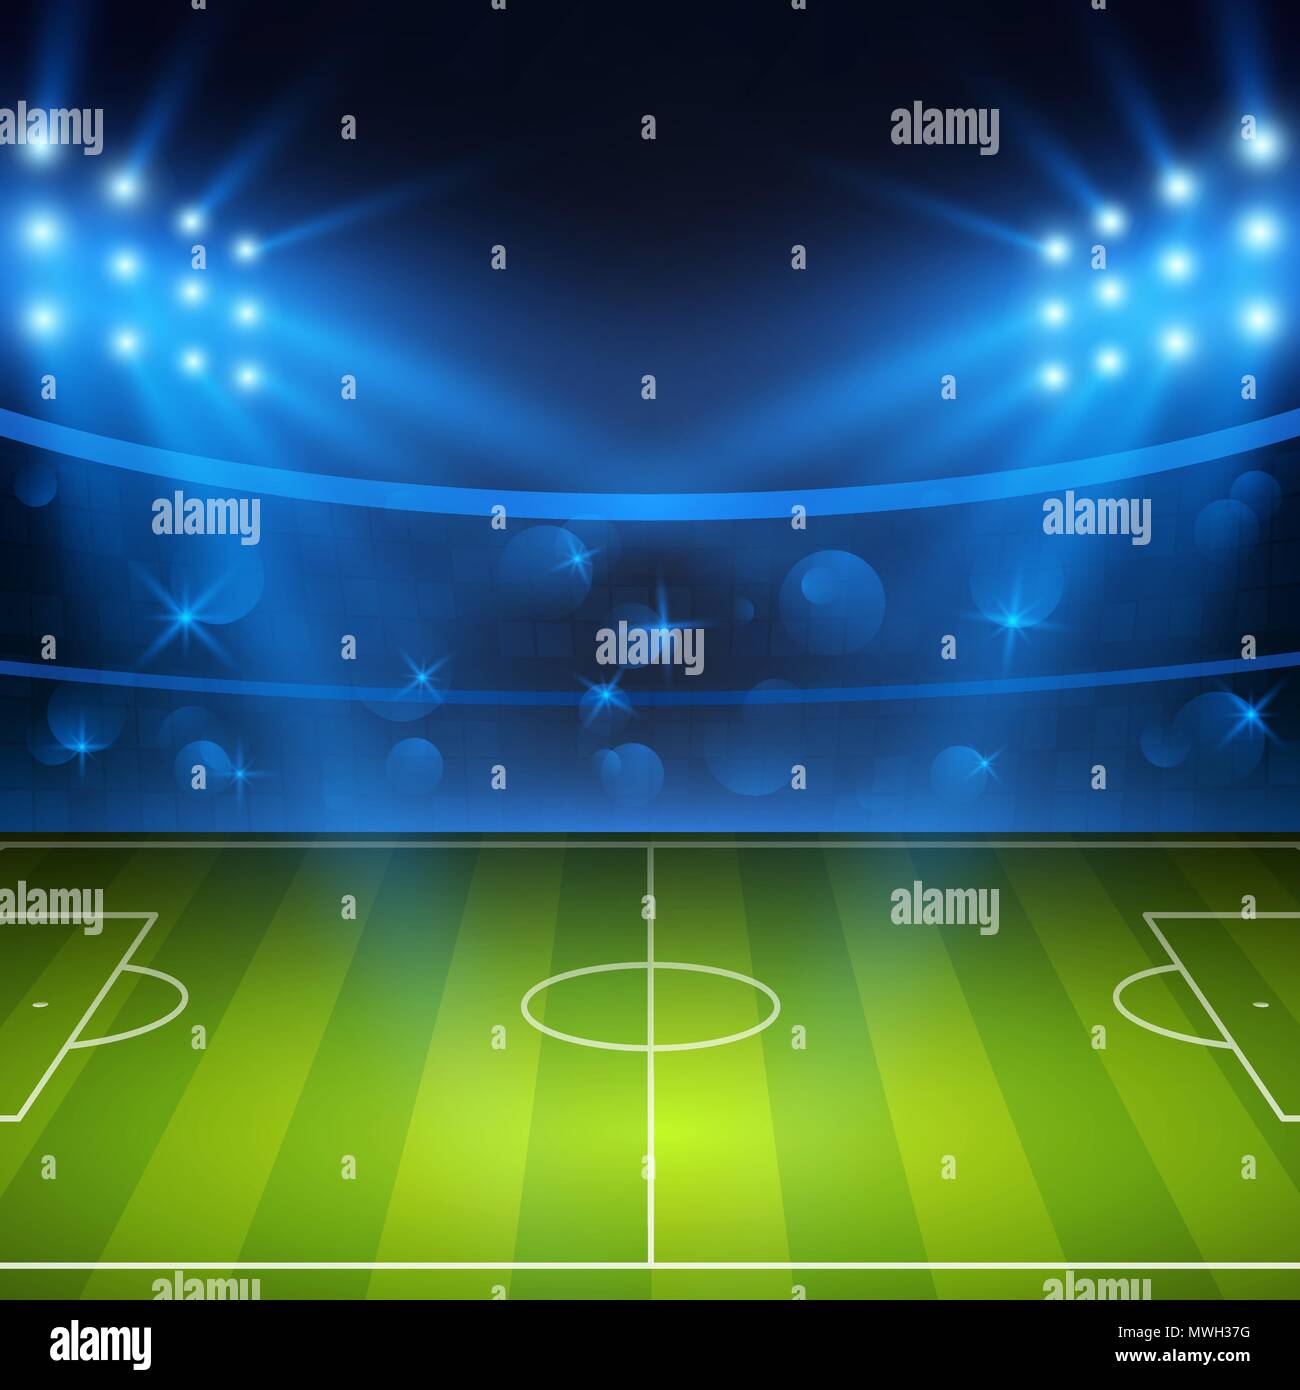 Soccer stadium. Football arena field with bright stadium lights. Vector illustration Stock Vector